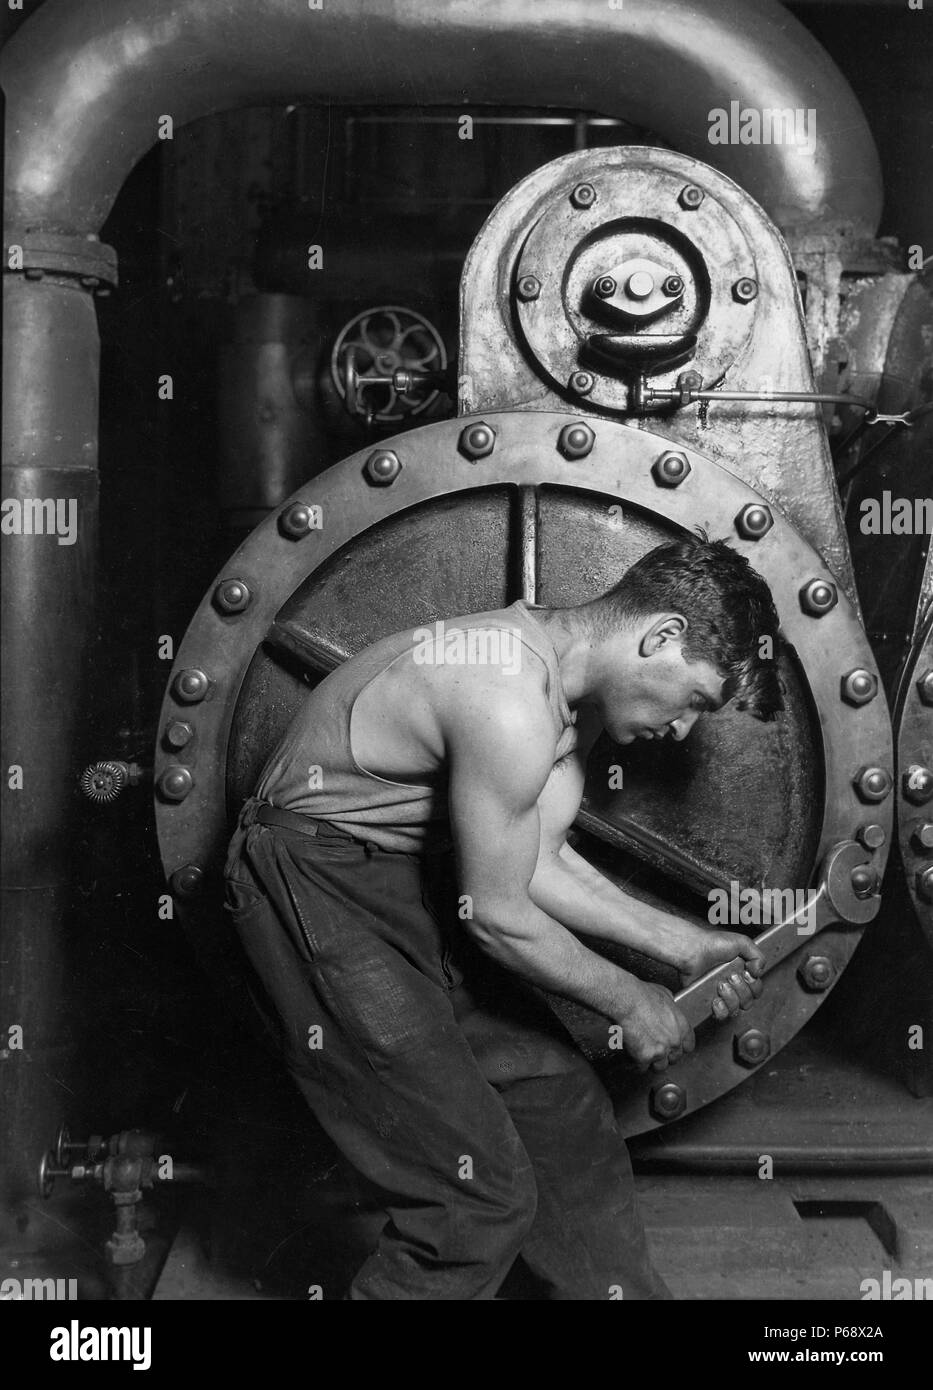 Photographie de mécanicien travaillant sur la pompe à vapeur à la Lewis Hine Power House. Datée 1920 Banque D'Images